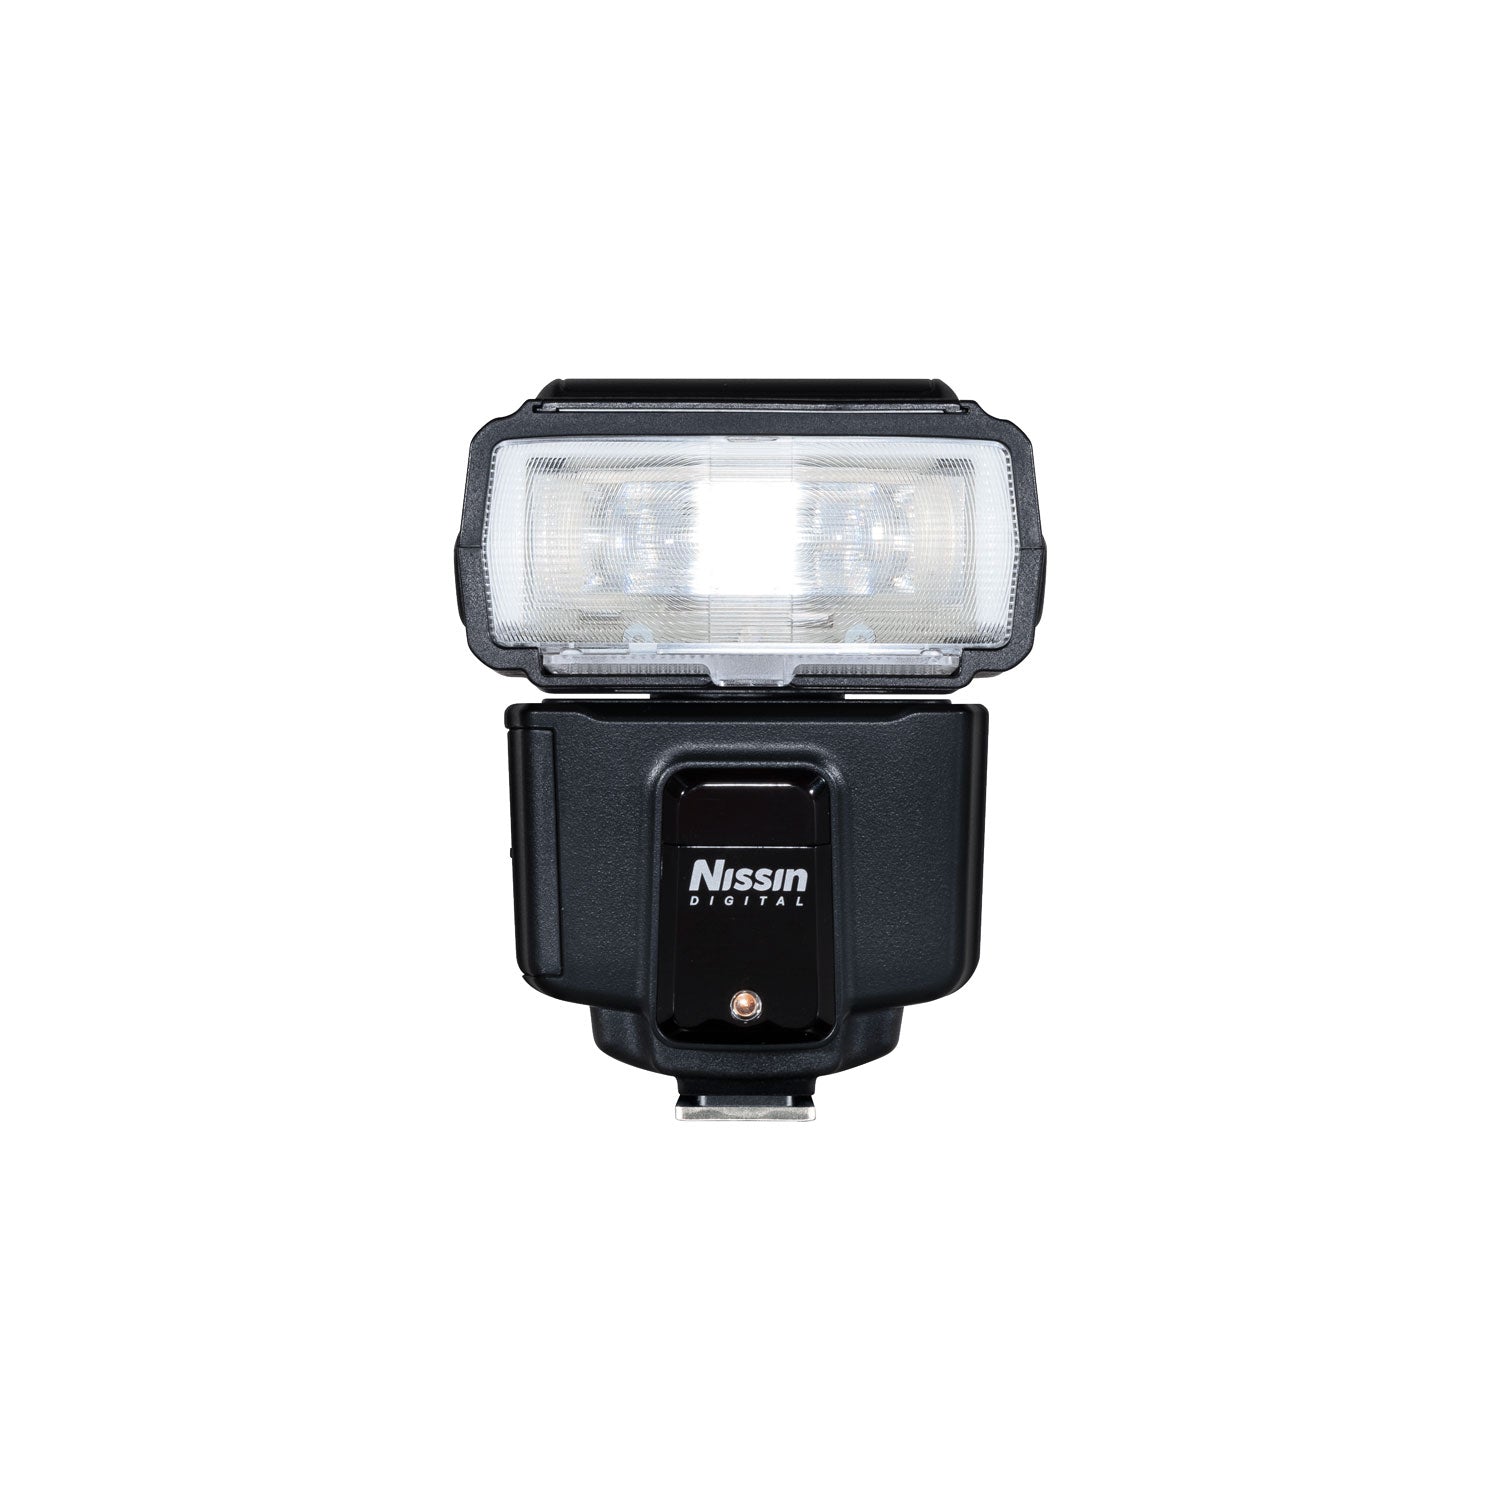 Nissin I600 Compact Flash Nissindigital Us